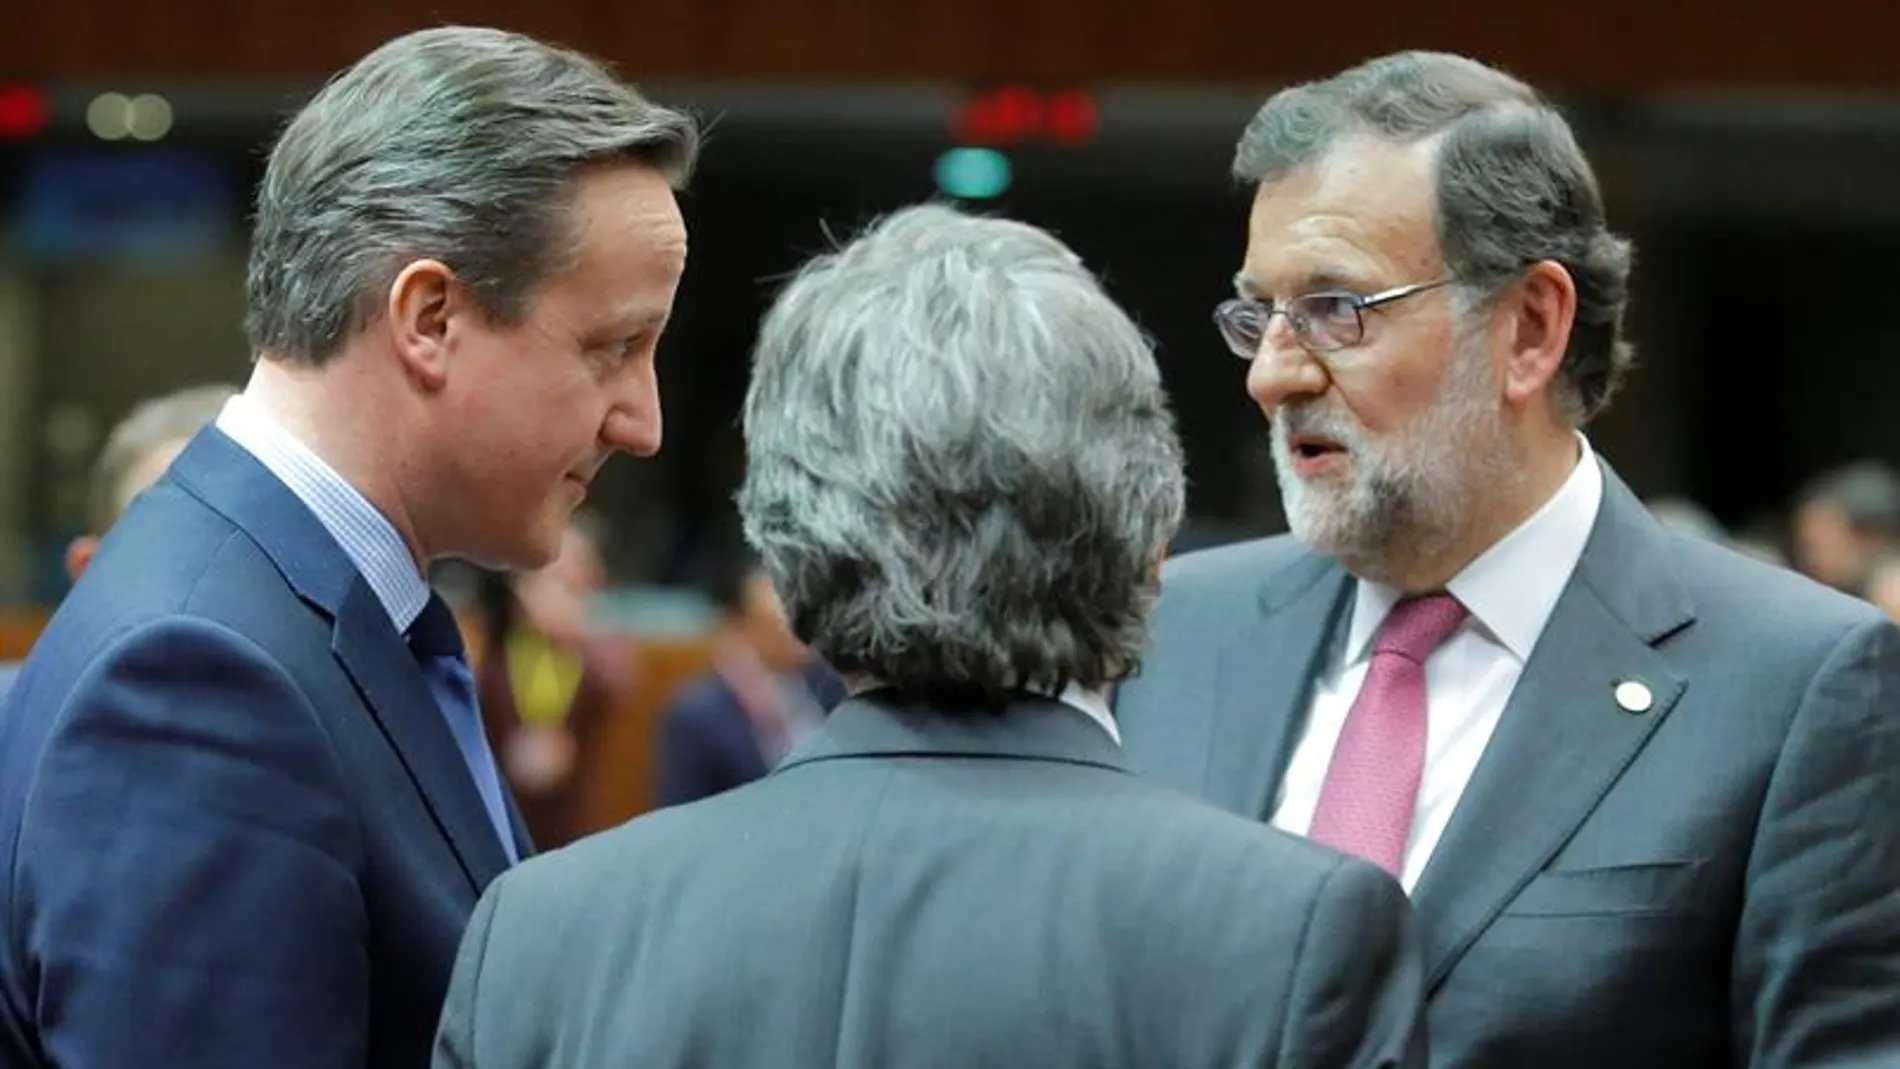 Mariano Rajoy y David Cameron en la cumbre del Consejo Europeo en Bruselas